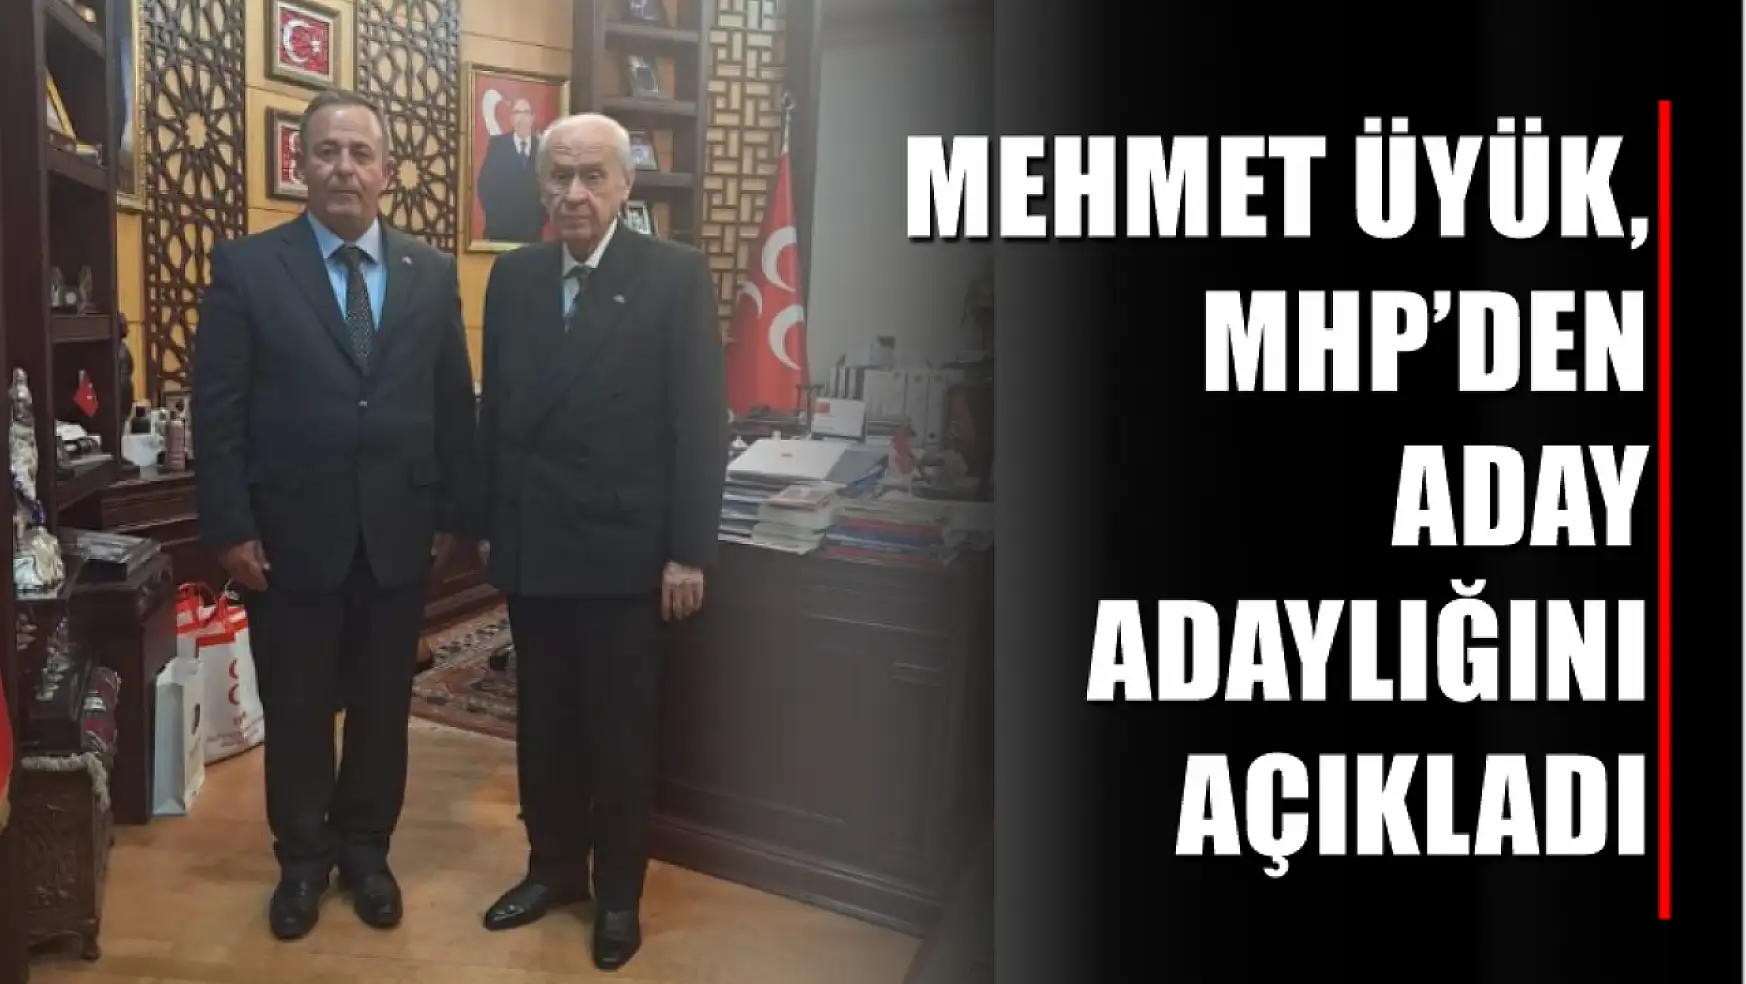 Mehmet Üyük, MHP'den Aday Adaylığını Açıkladı 